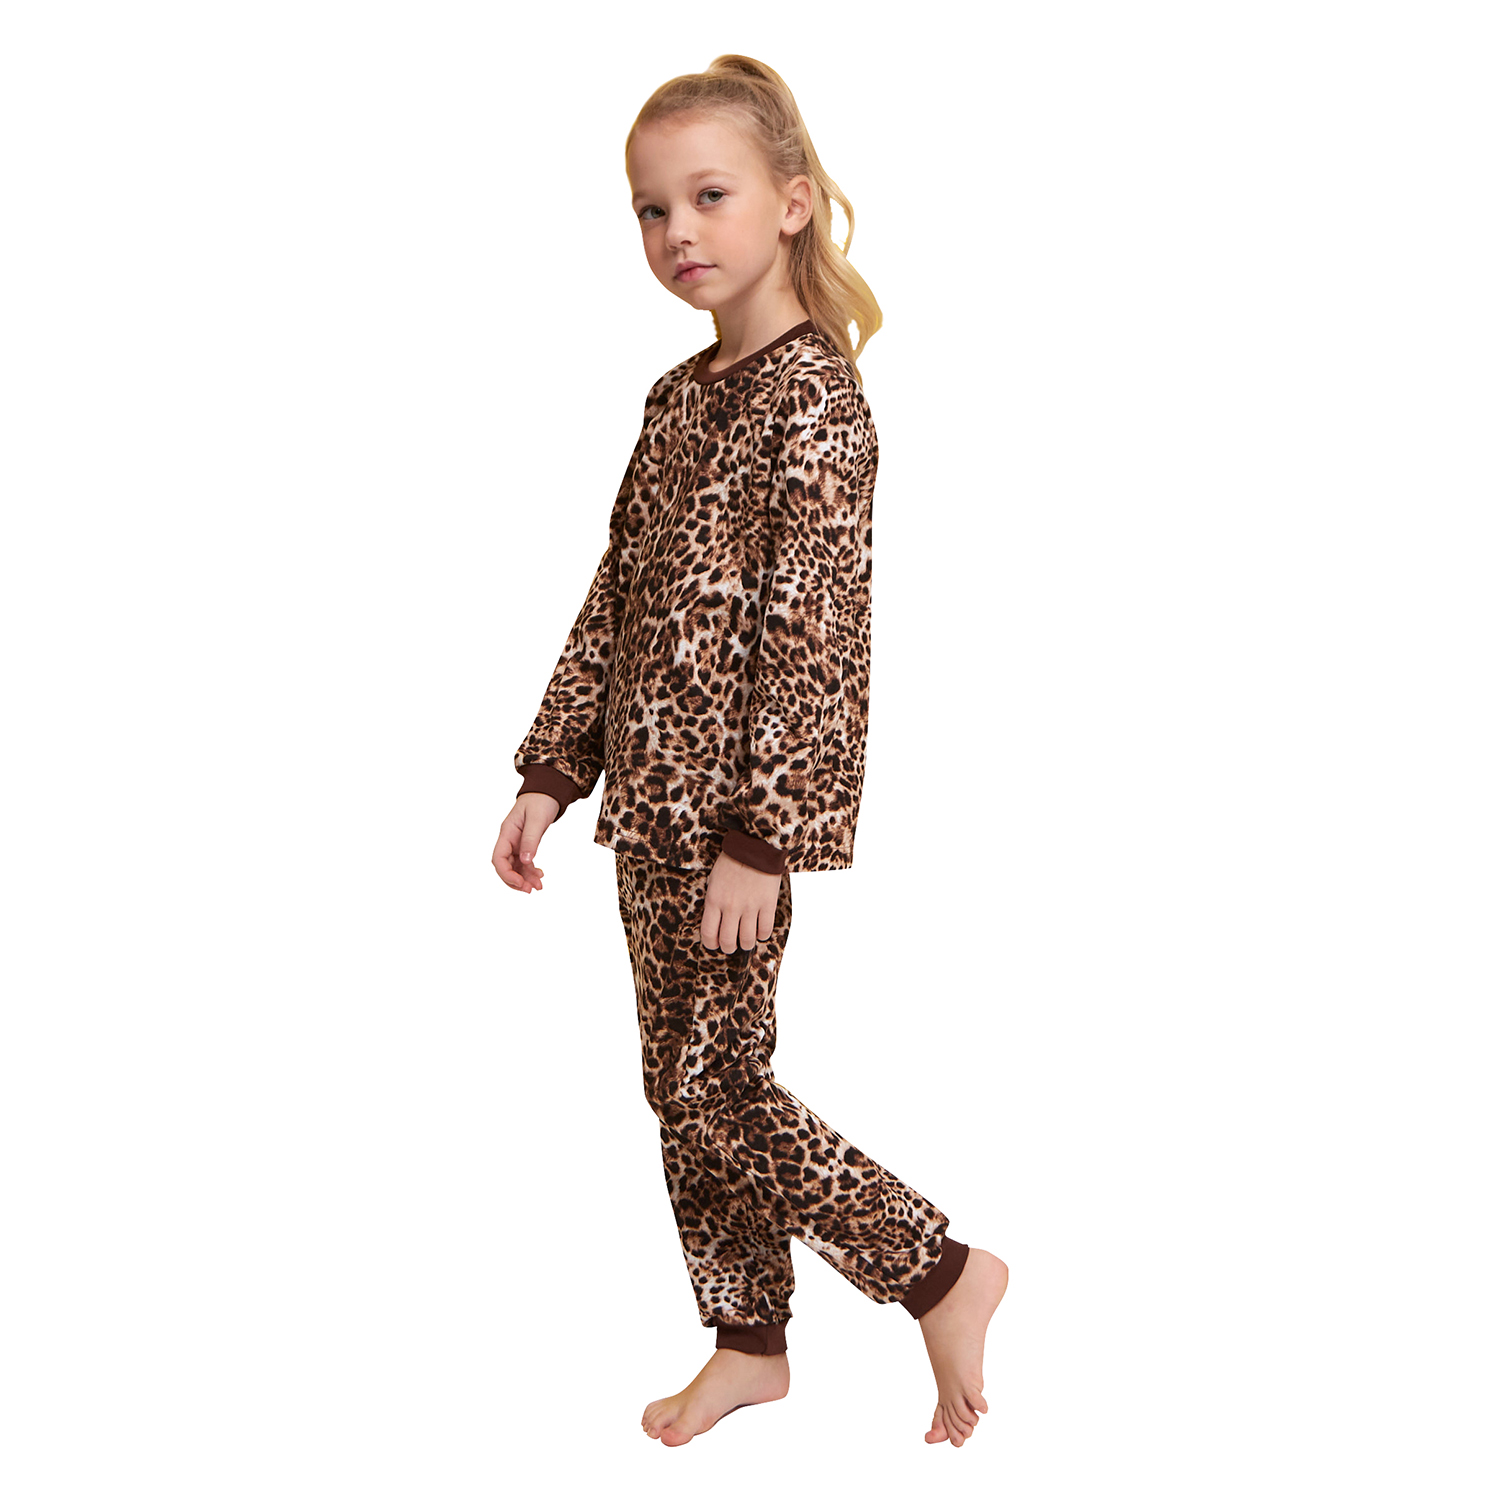 Пижама детская Веселый малыш Leopard цв. коричневый р.116 374170/Leopard_116